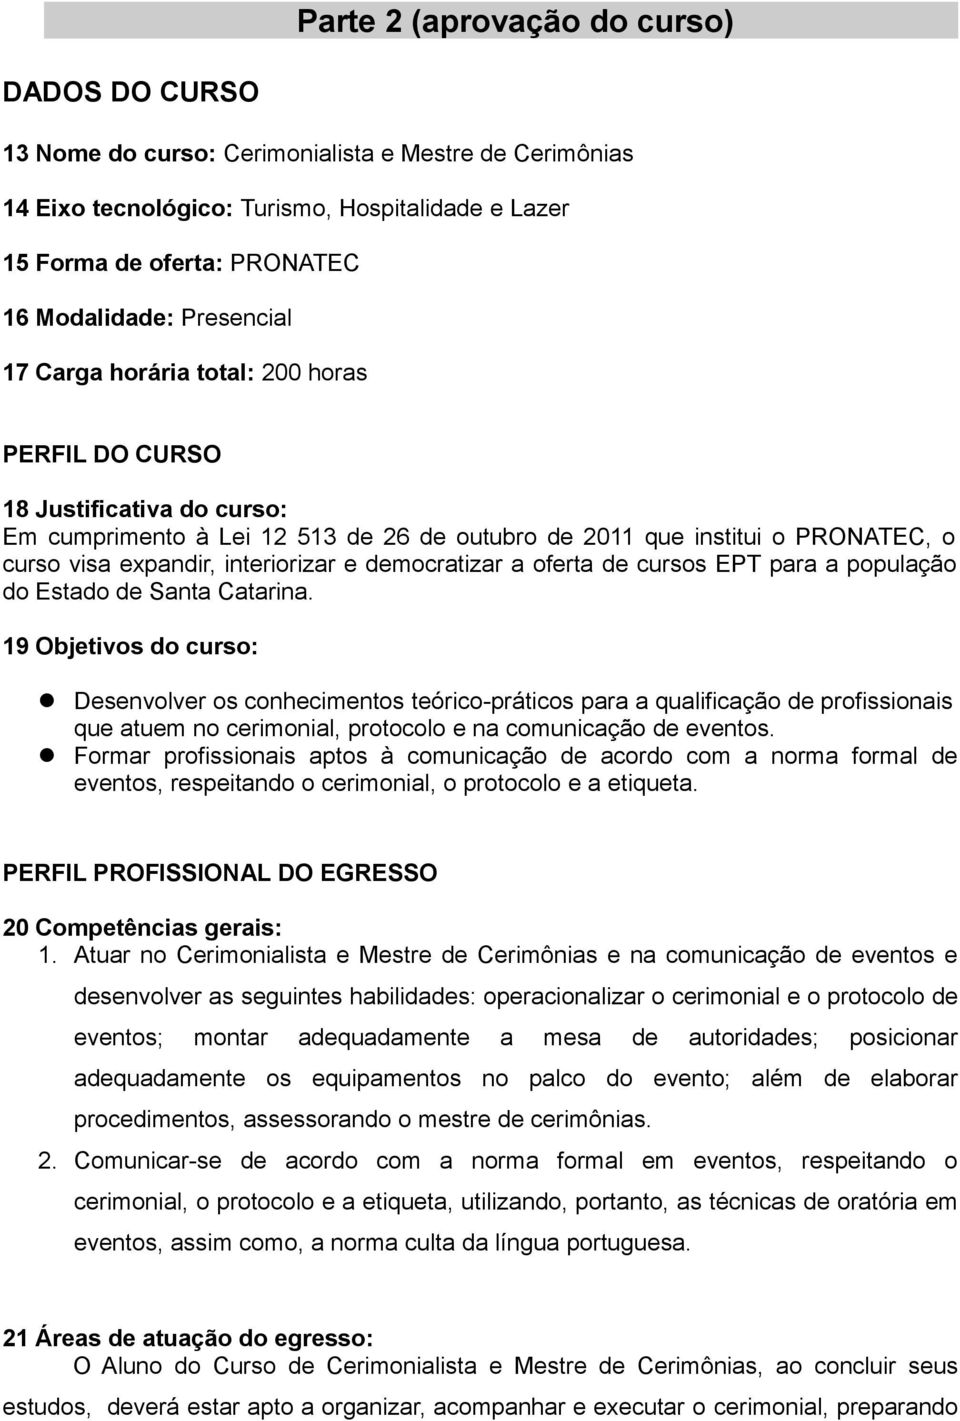 interiorizar e democratizar a oferta de cursos EPT para a população do Estado de Santa Catarina.